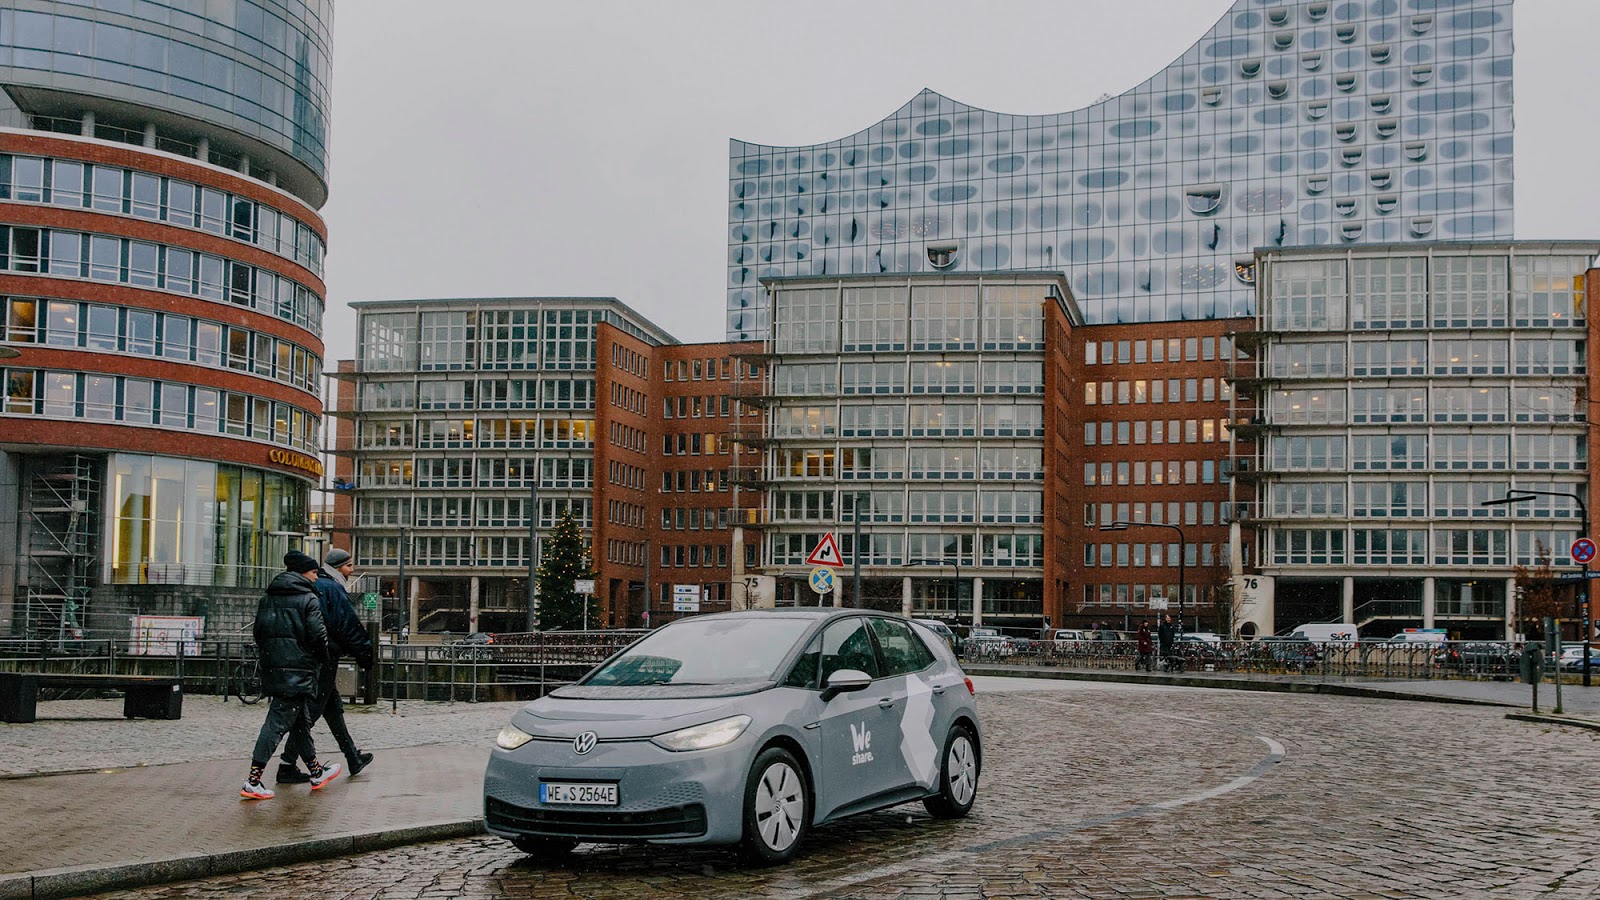 VOLKSWAGEN WESHARE HAMBURG 1 Volkswagen : Ξεκινά car sharing ηλεκτρικών αυτοκινήτων στο Αμβούργο